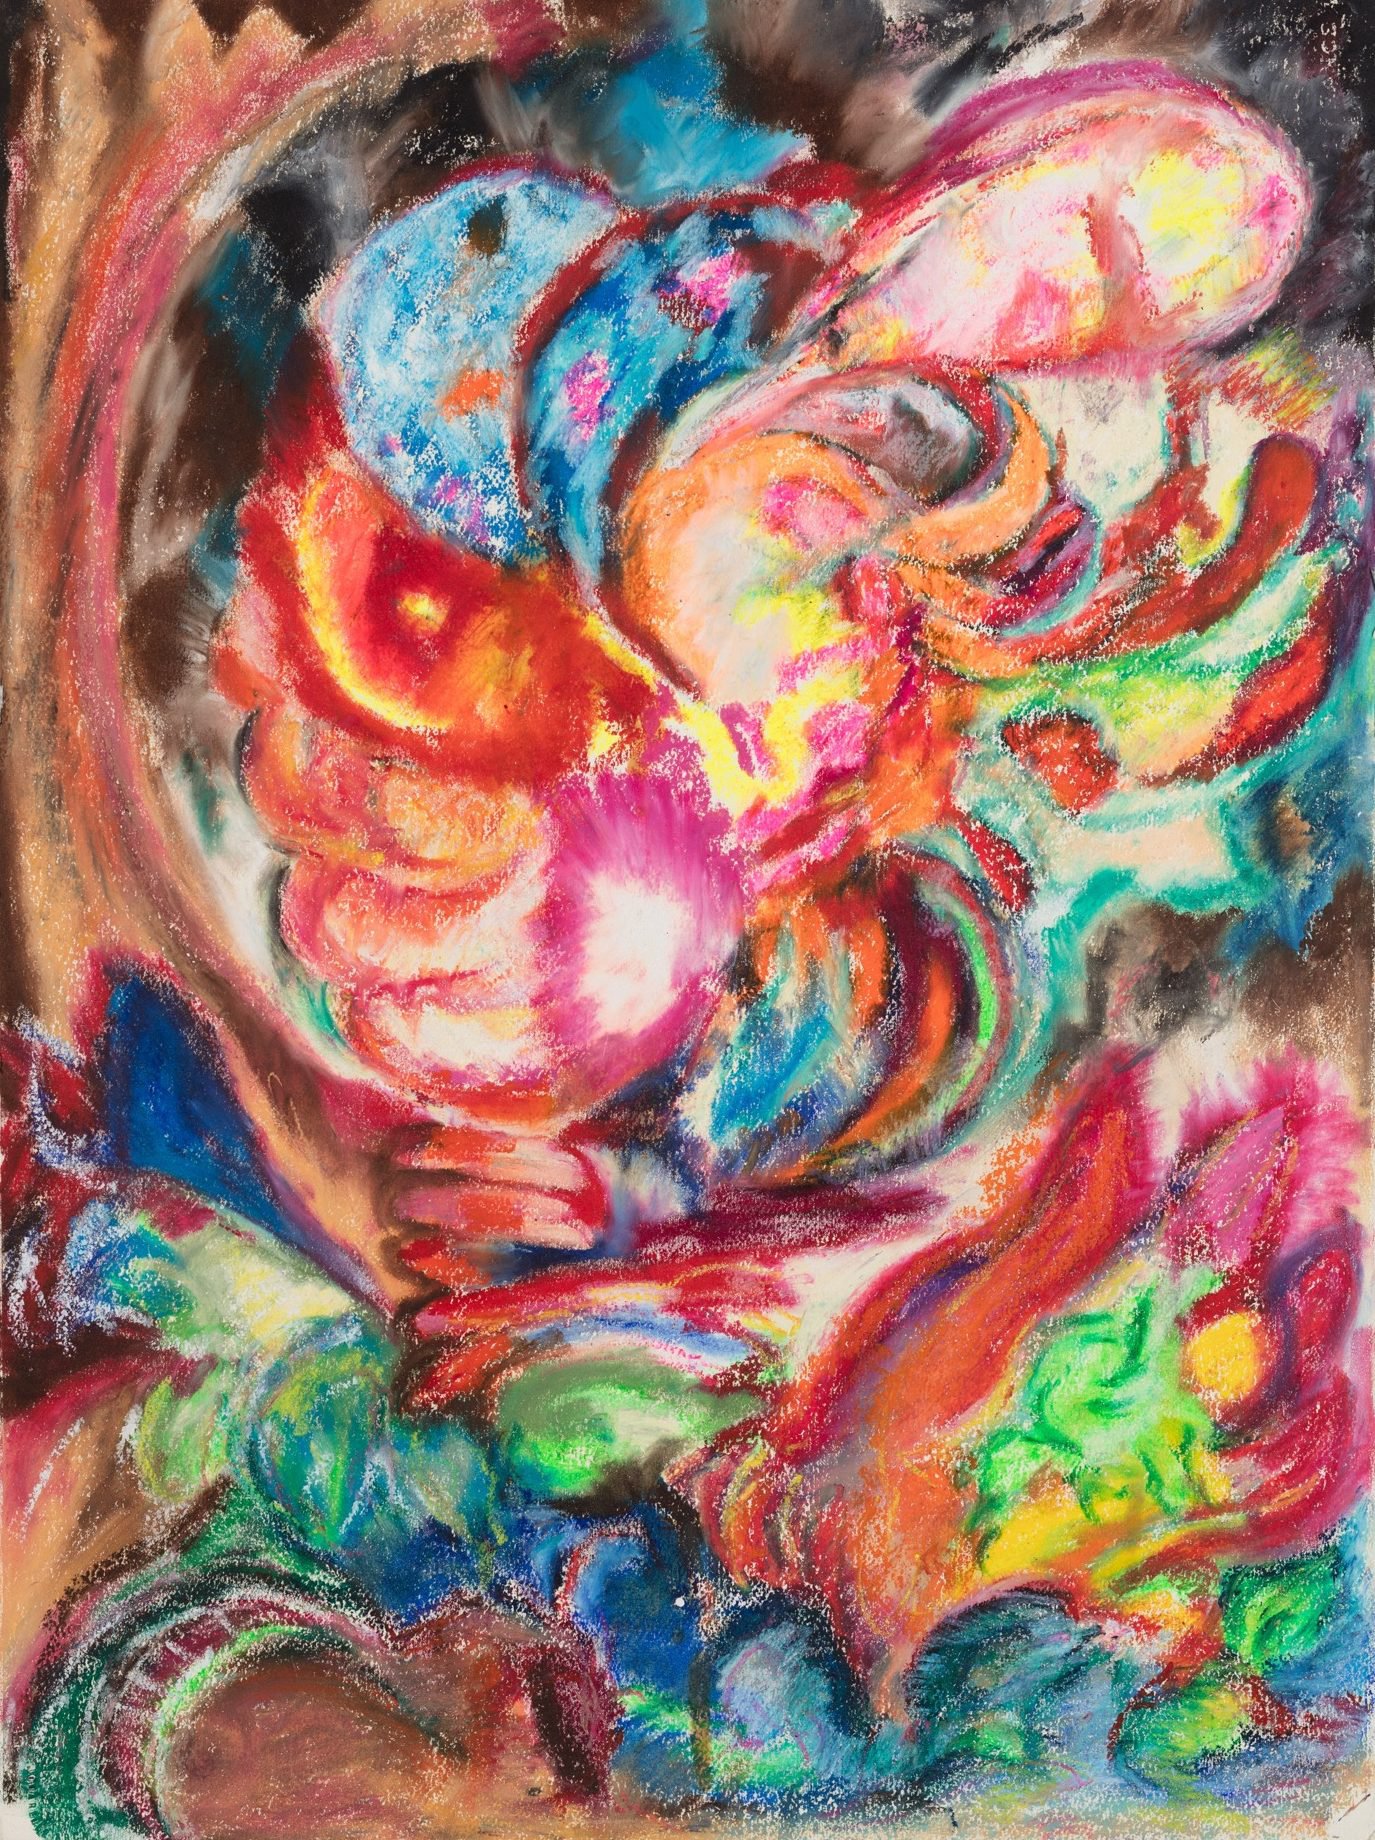 Liliane Lijn, Her Monstrous Head, oil pastel on paper, 76 x 56.4 cm (29 7/8 x 22 1/4 in), 1989 – 1994